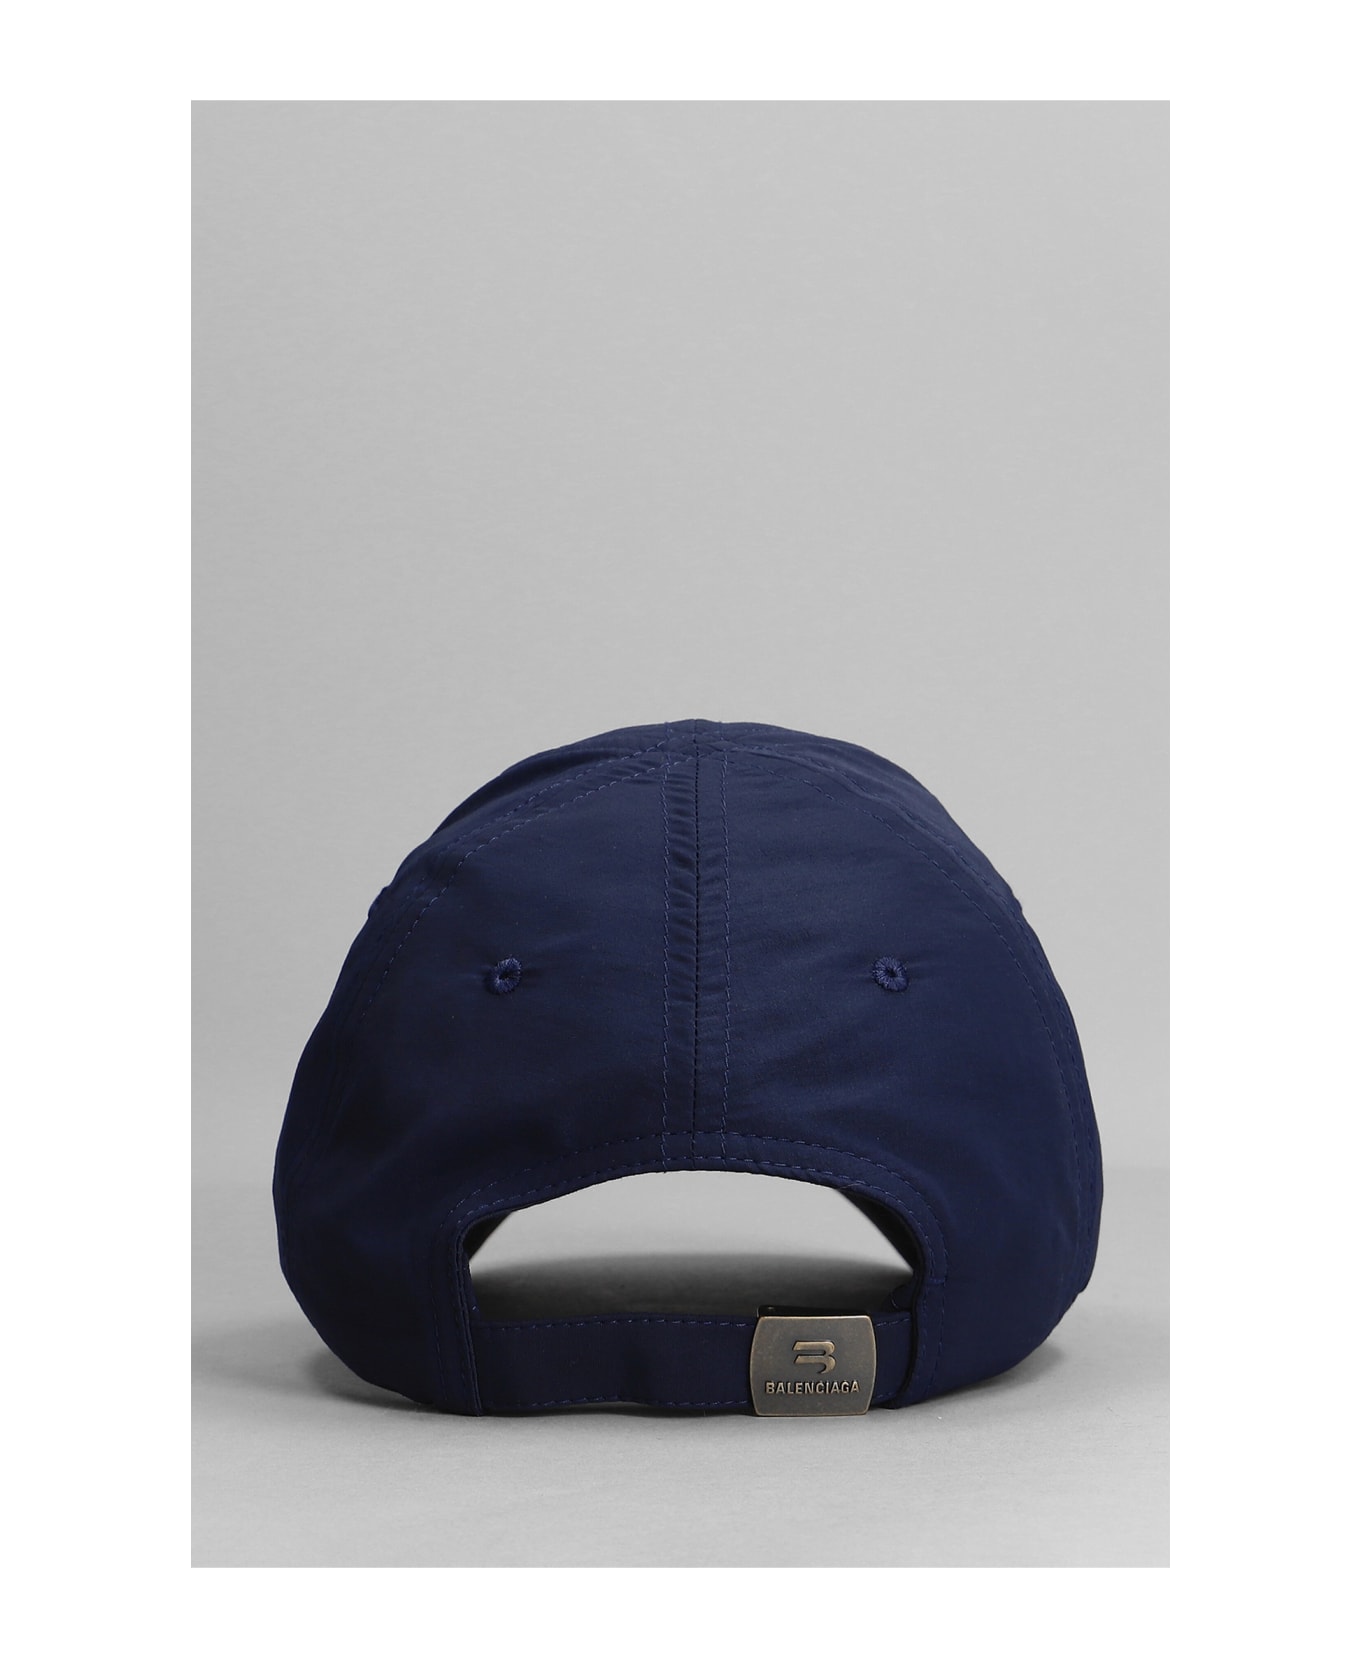 Balenciaga Hats In Blue Cotton - blue